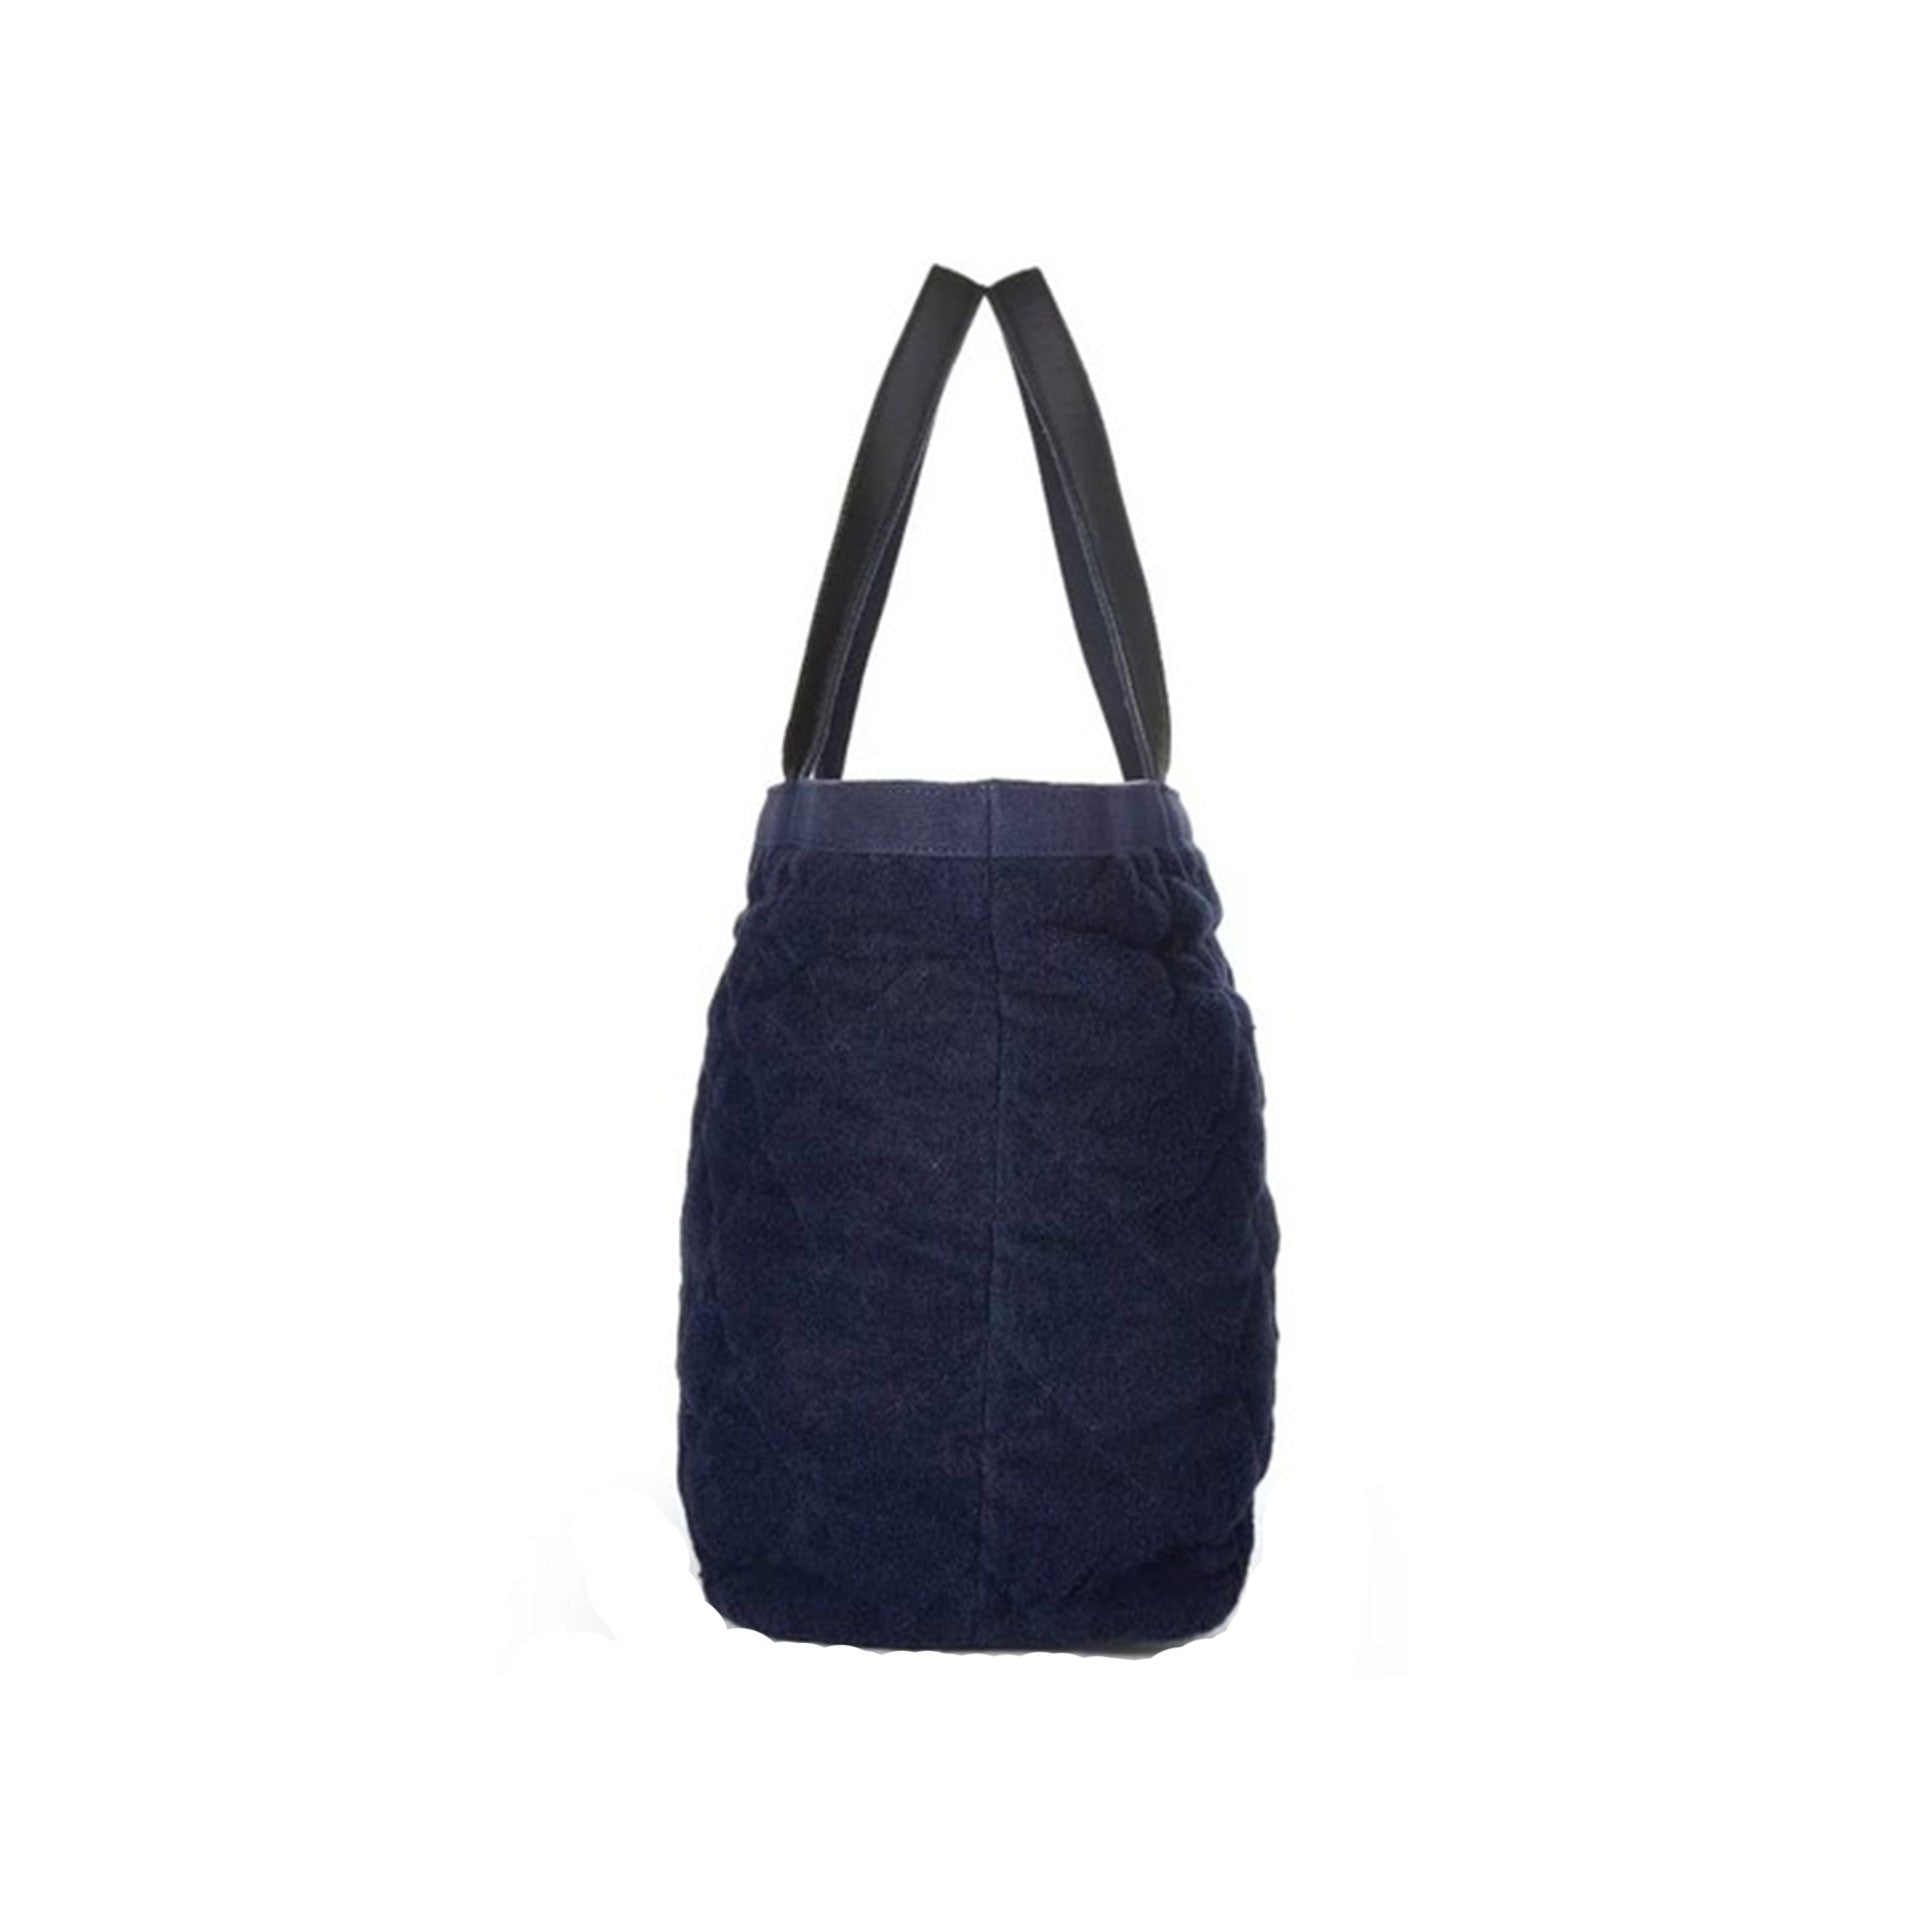 blue chanel beach bag tote